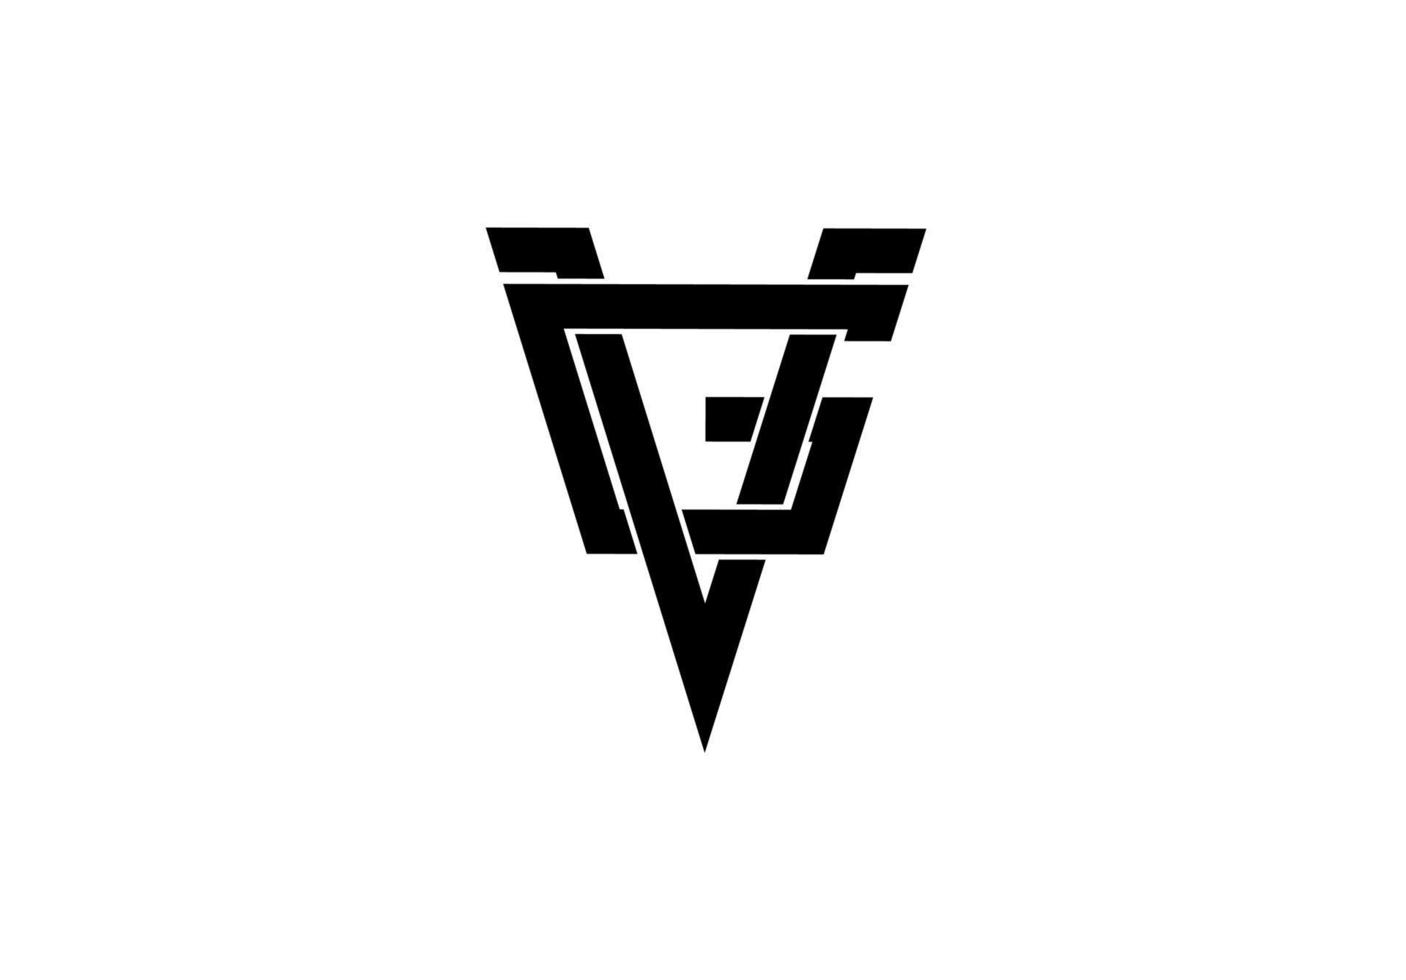 gv vg gv beginletter logo geïsoleerd op een witte achtergrond vector